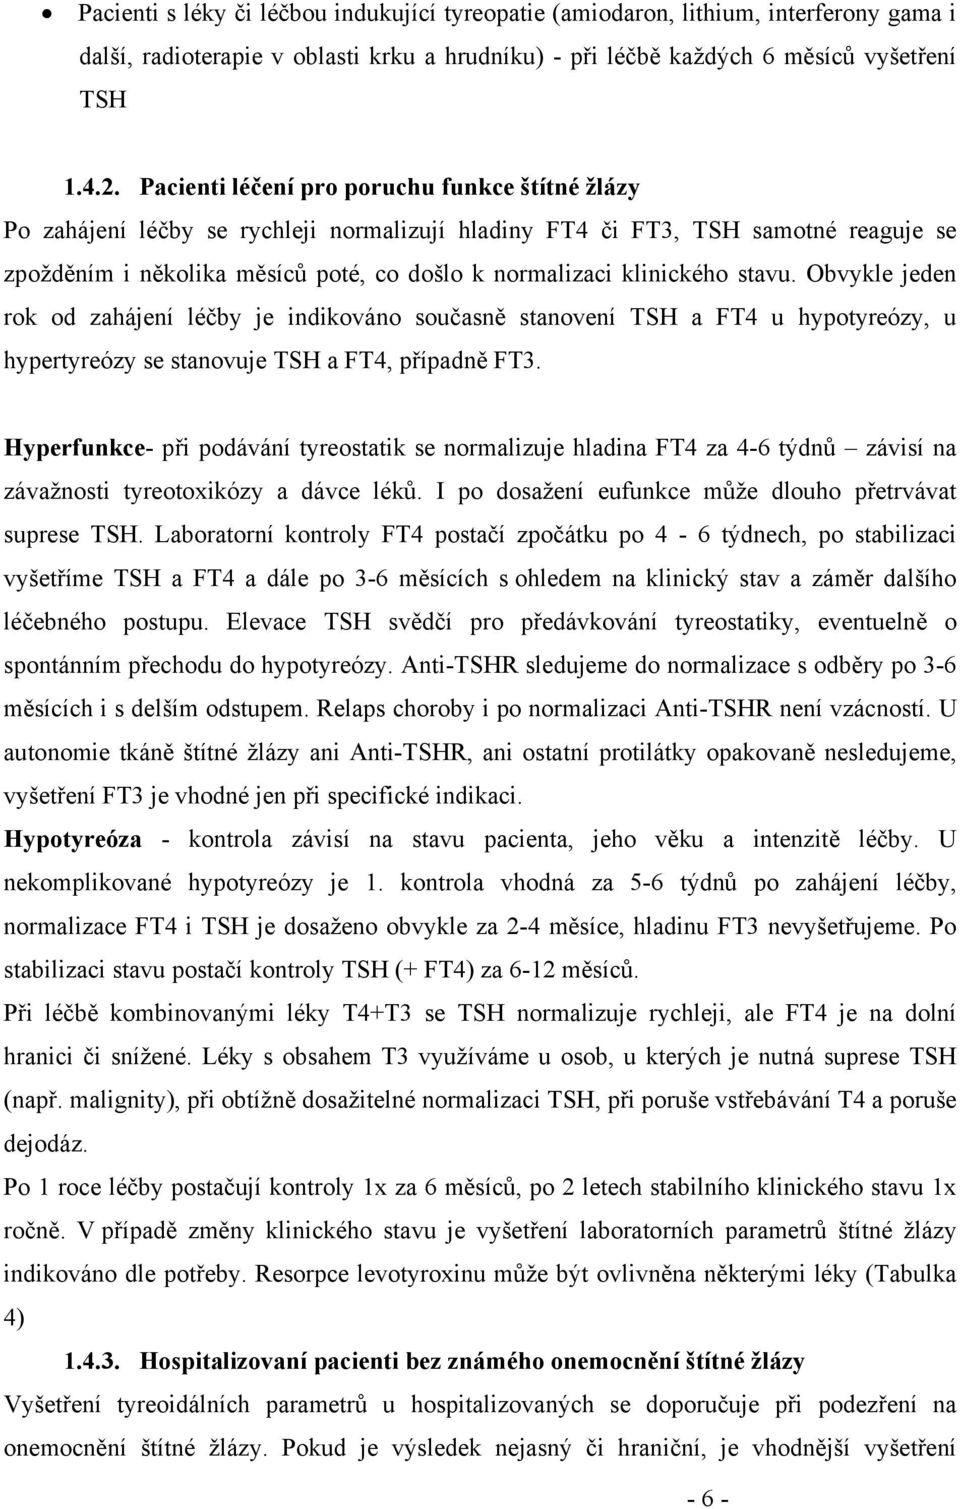 klinického stavu. Obvykle jeden rok od zahájení léčby je indikováno současně stanovení TSH a FT4 u hypotyreózy, u hypertyreózy se stanovuje TSH a FT4, případně FT3.